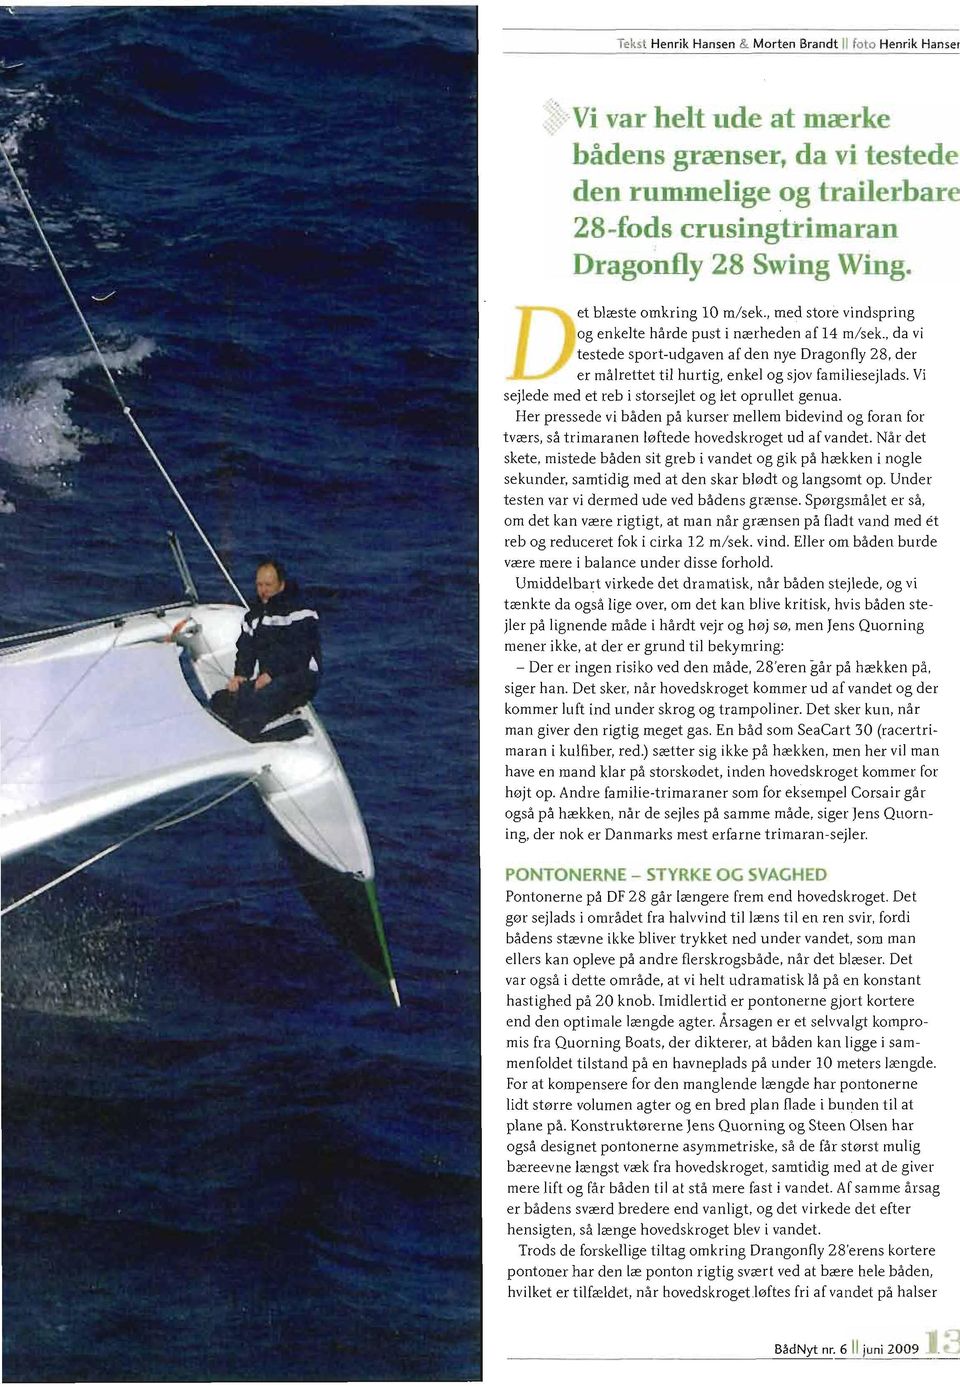 , da vi testede sport-udgaven af den nye Dragonfly 28, der er malrettet til hurtig, enkel og sjov familiesejlads. Vi sejlede med et reb i storsejlet og let oprullet genua.